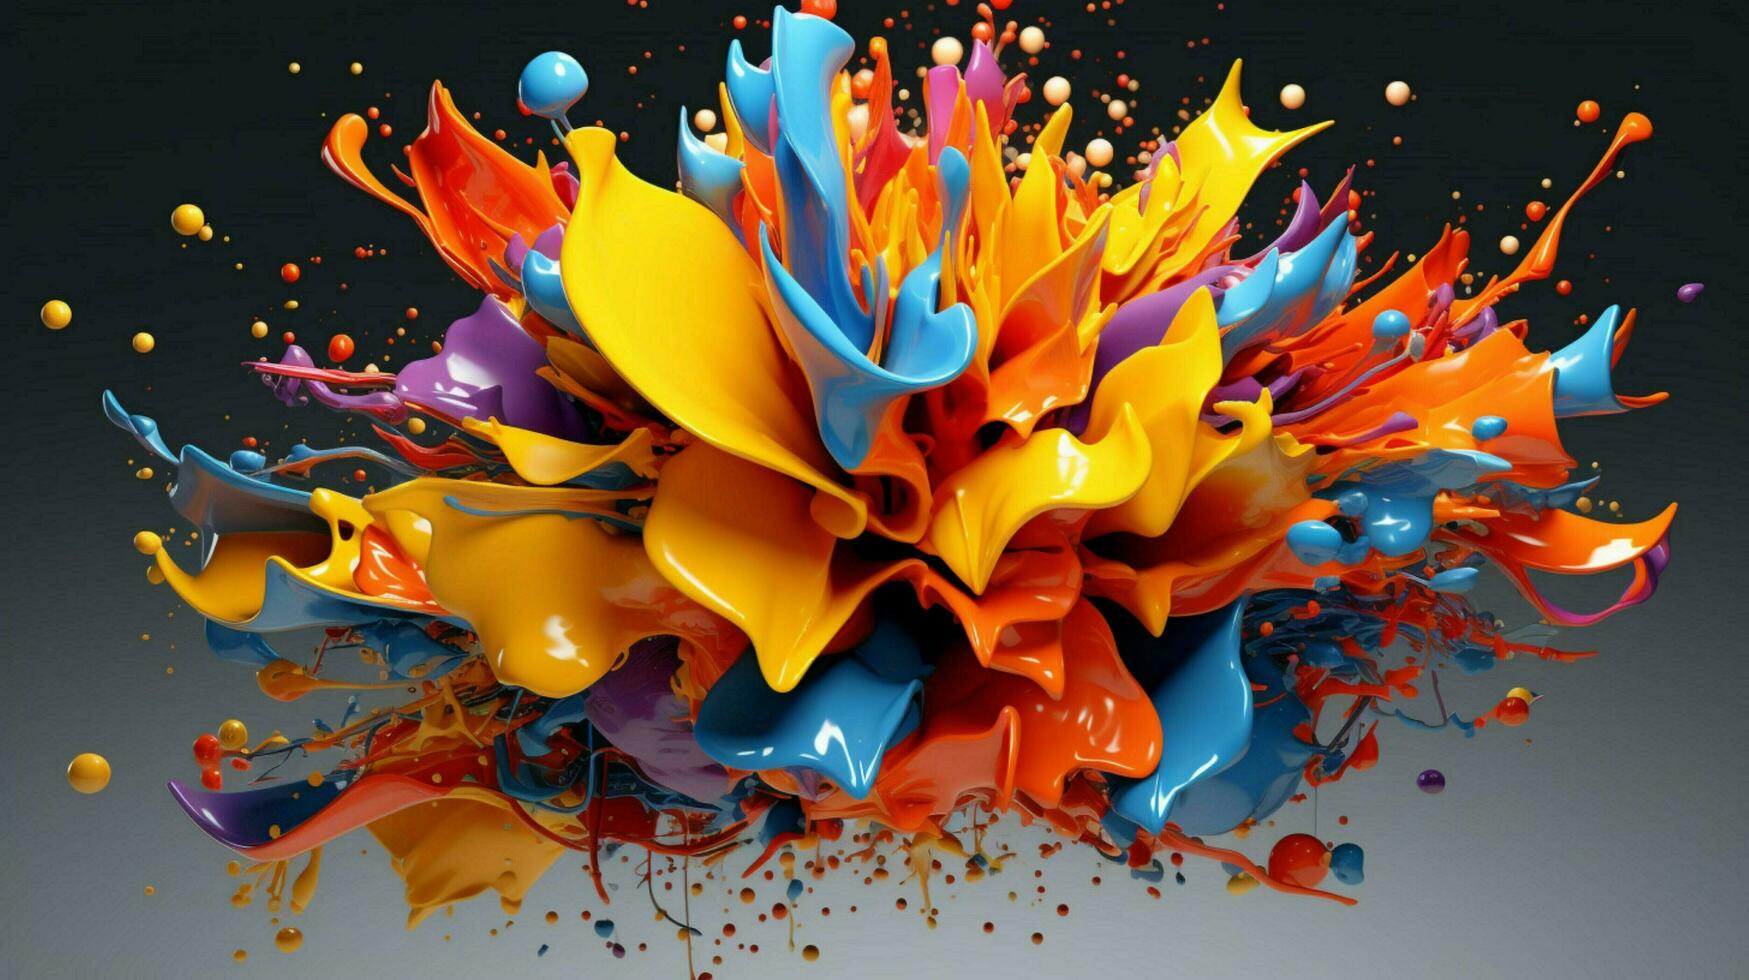 abstract kunst met kleurrijk plons 3d foto